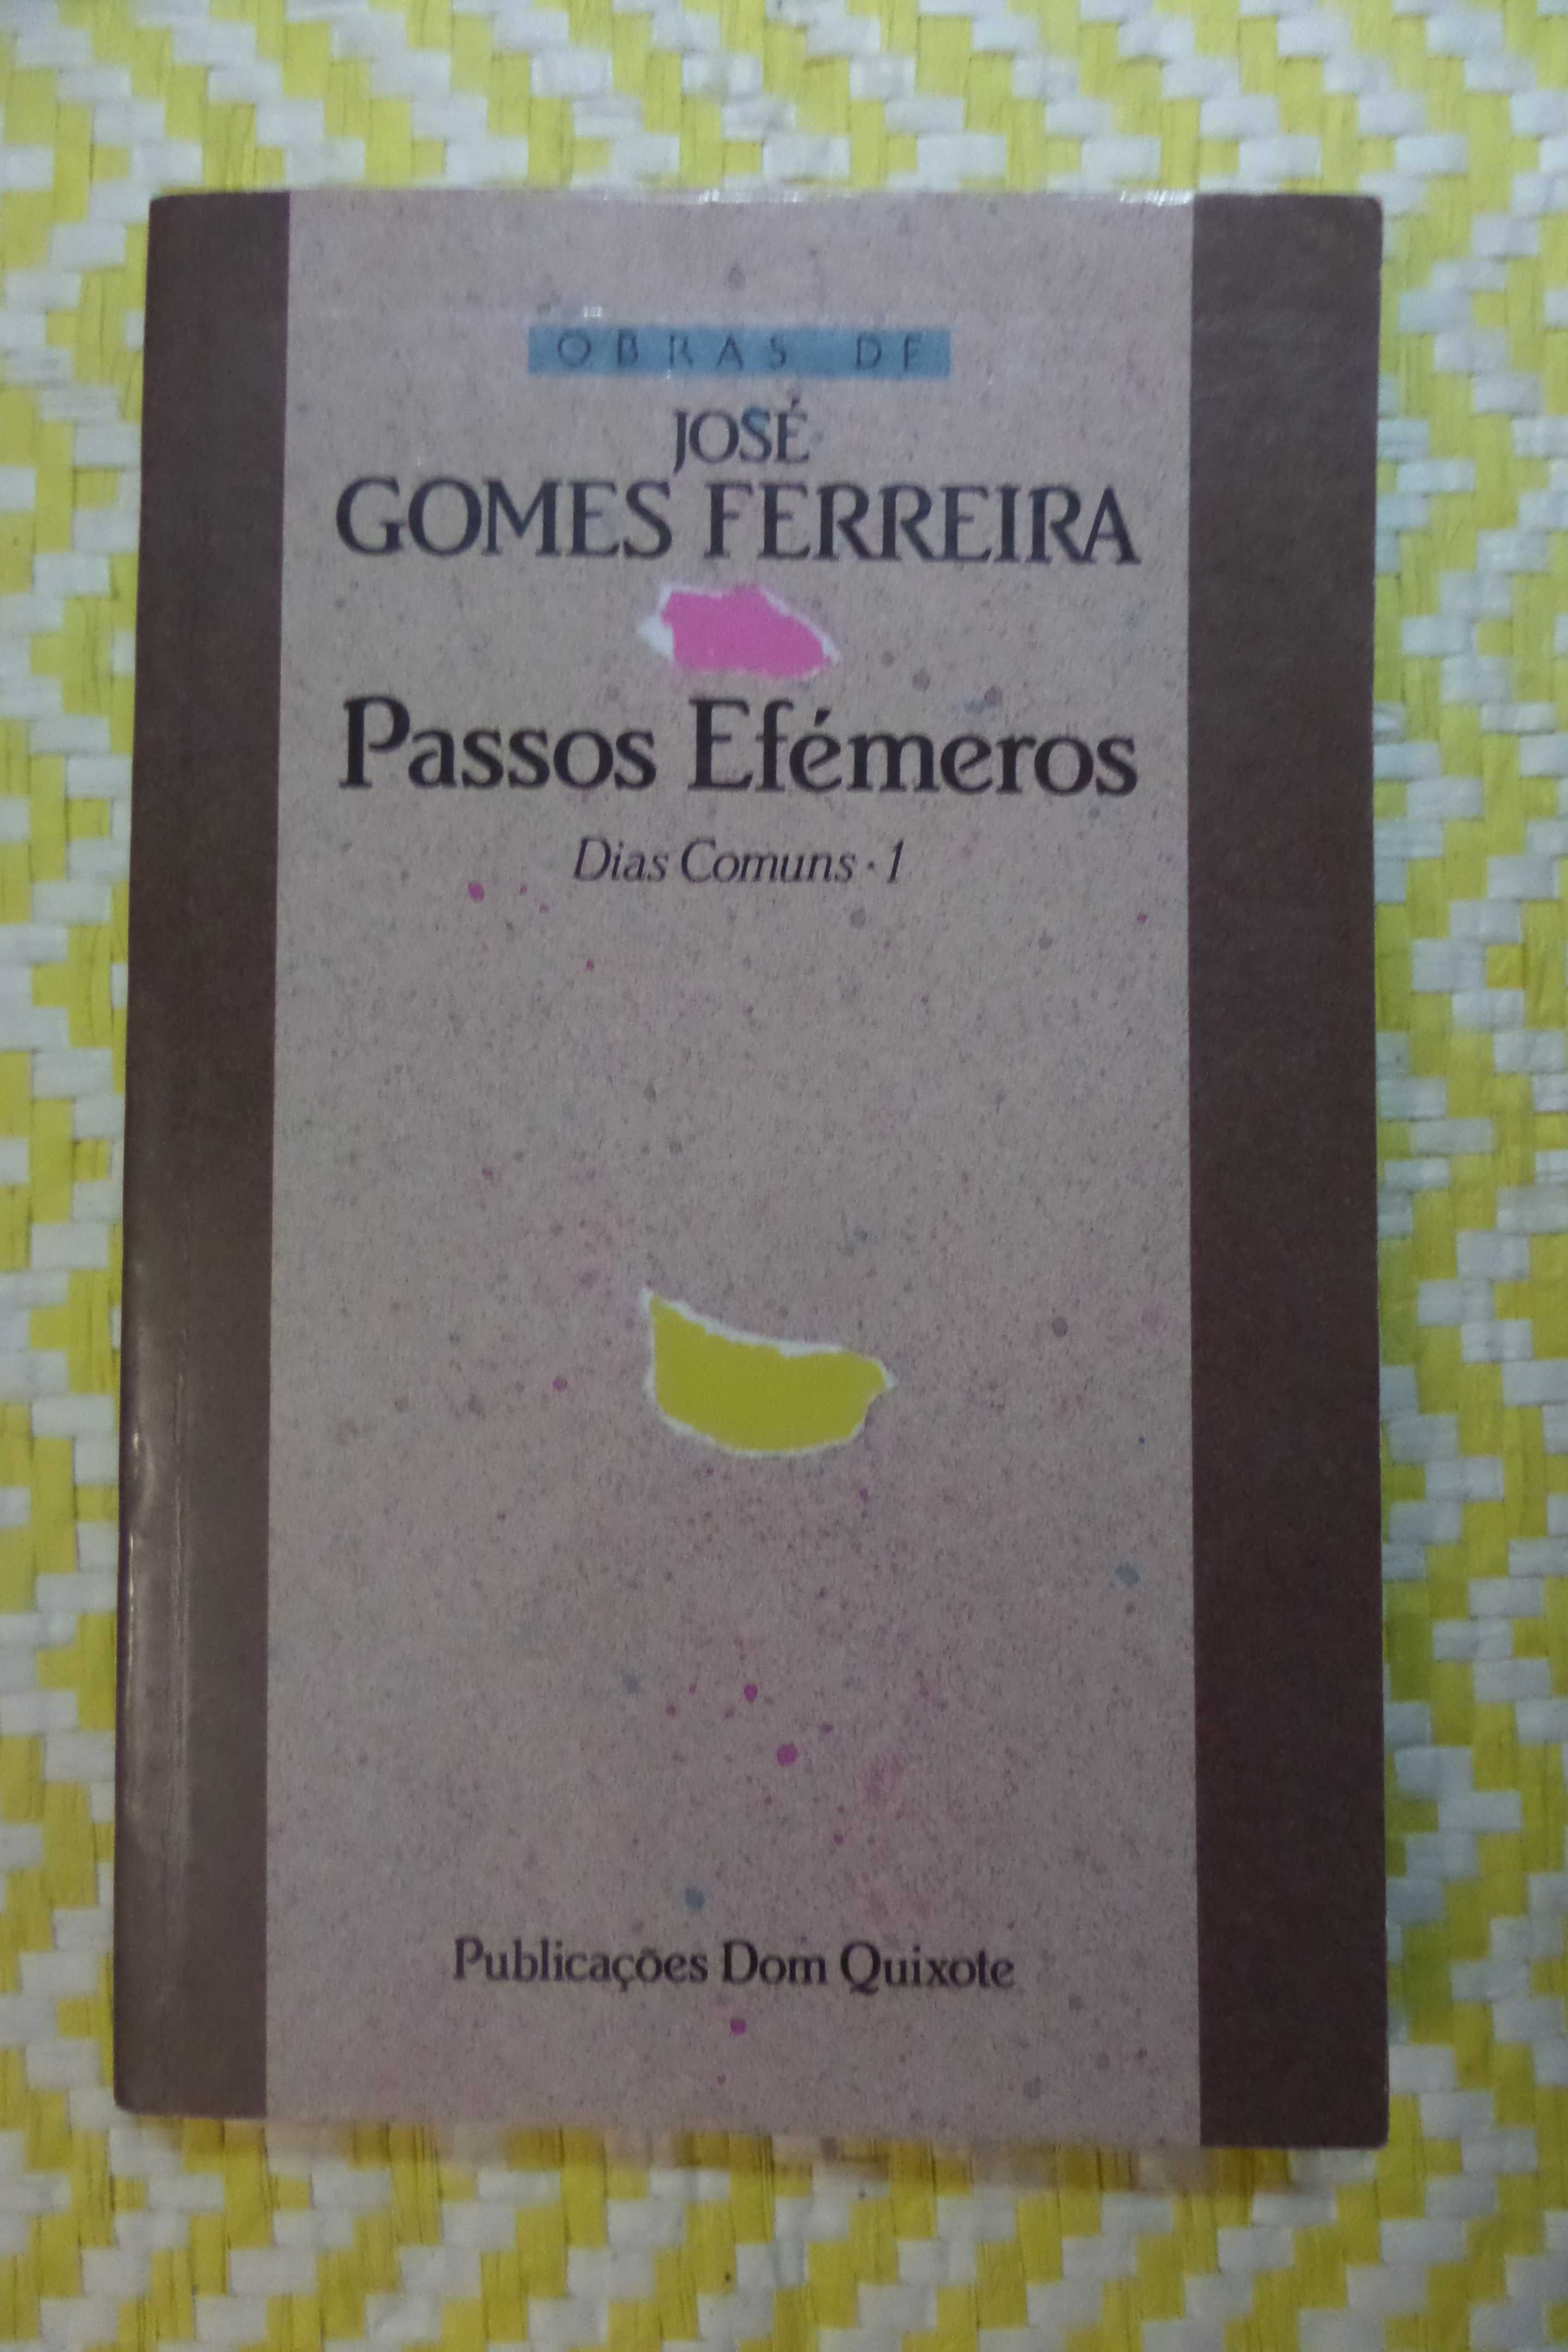 Passos Efémeros - Dias Comuns I
de José Gomes Ferreira